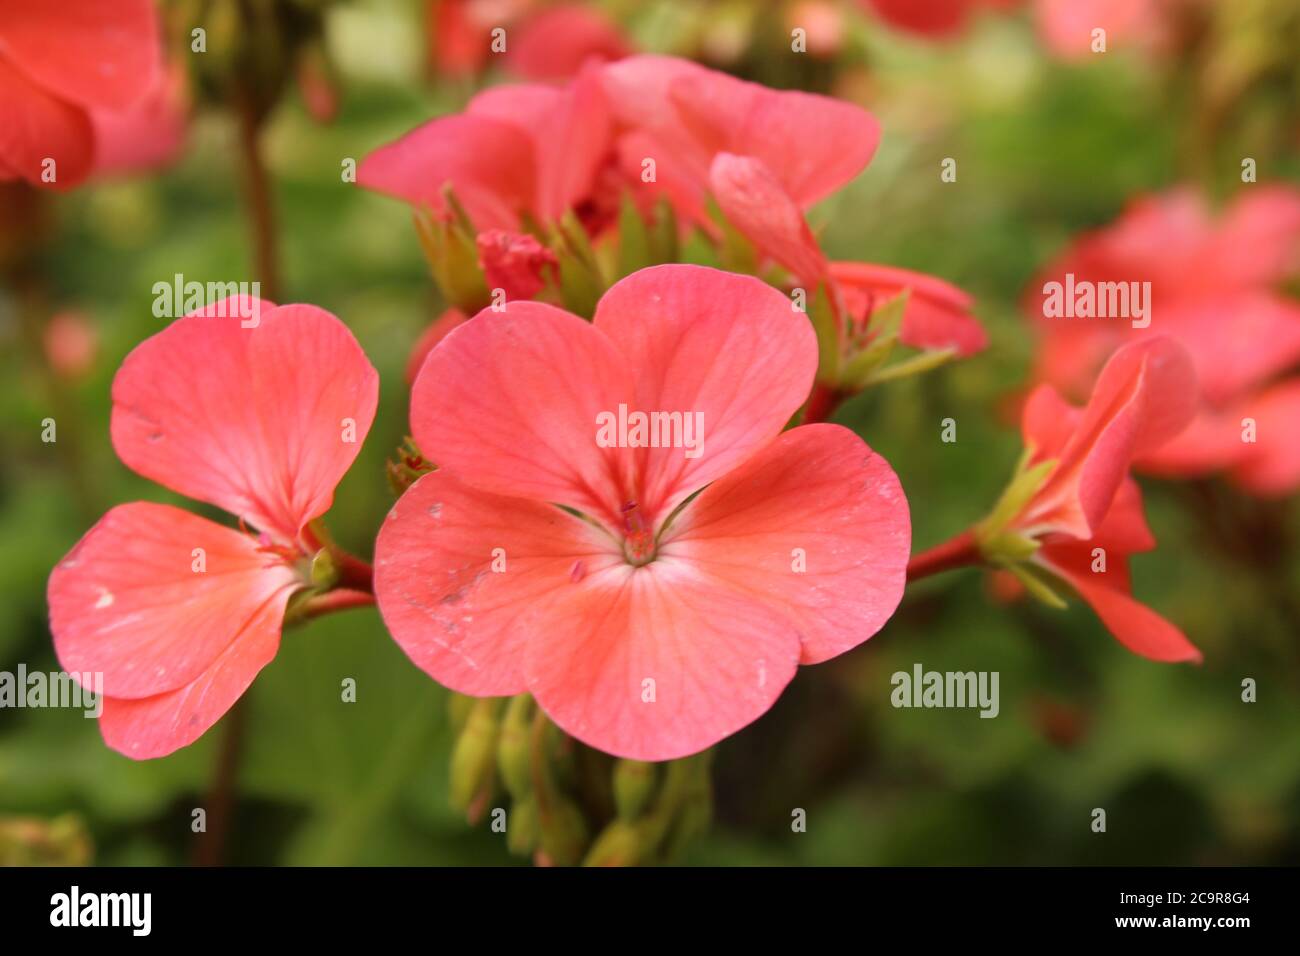 bella luce morbida fiore rosa primo piano floricoltura giardinaggio saluto scheda Foto Stock